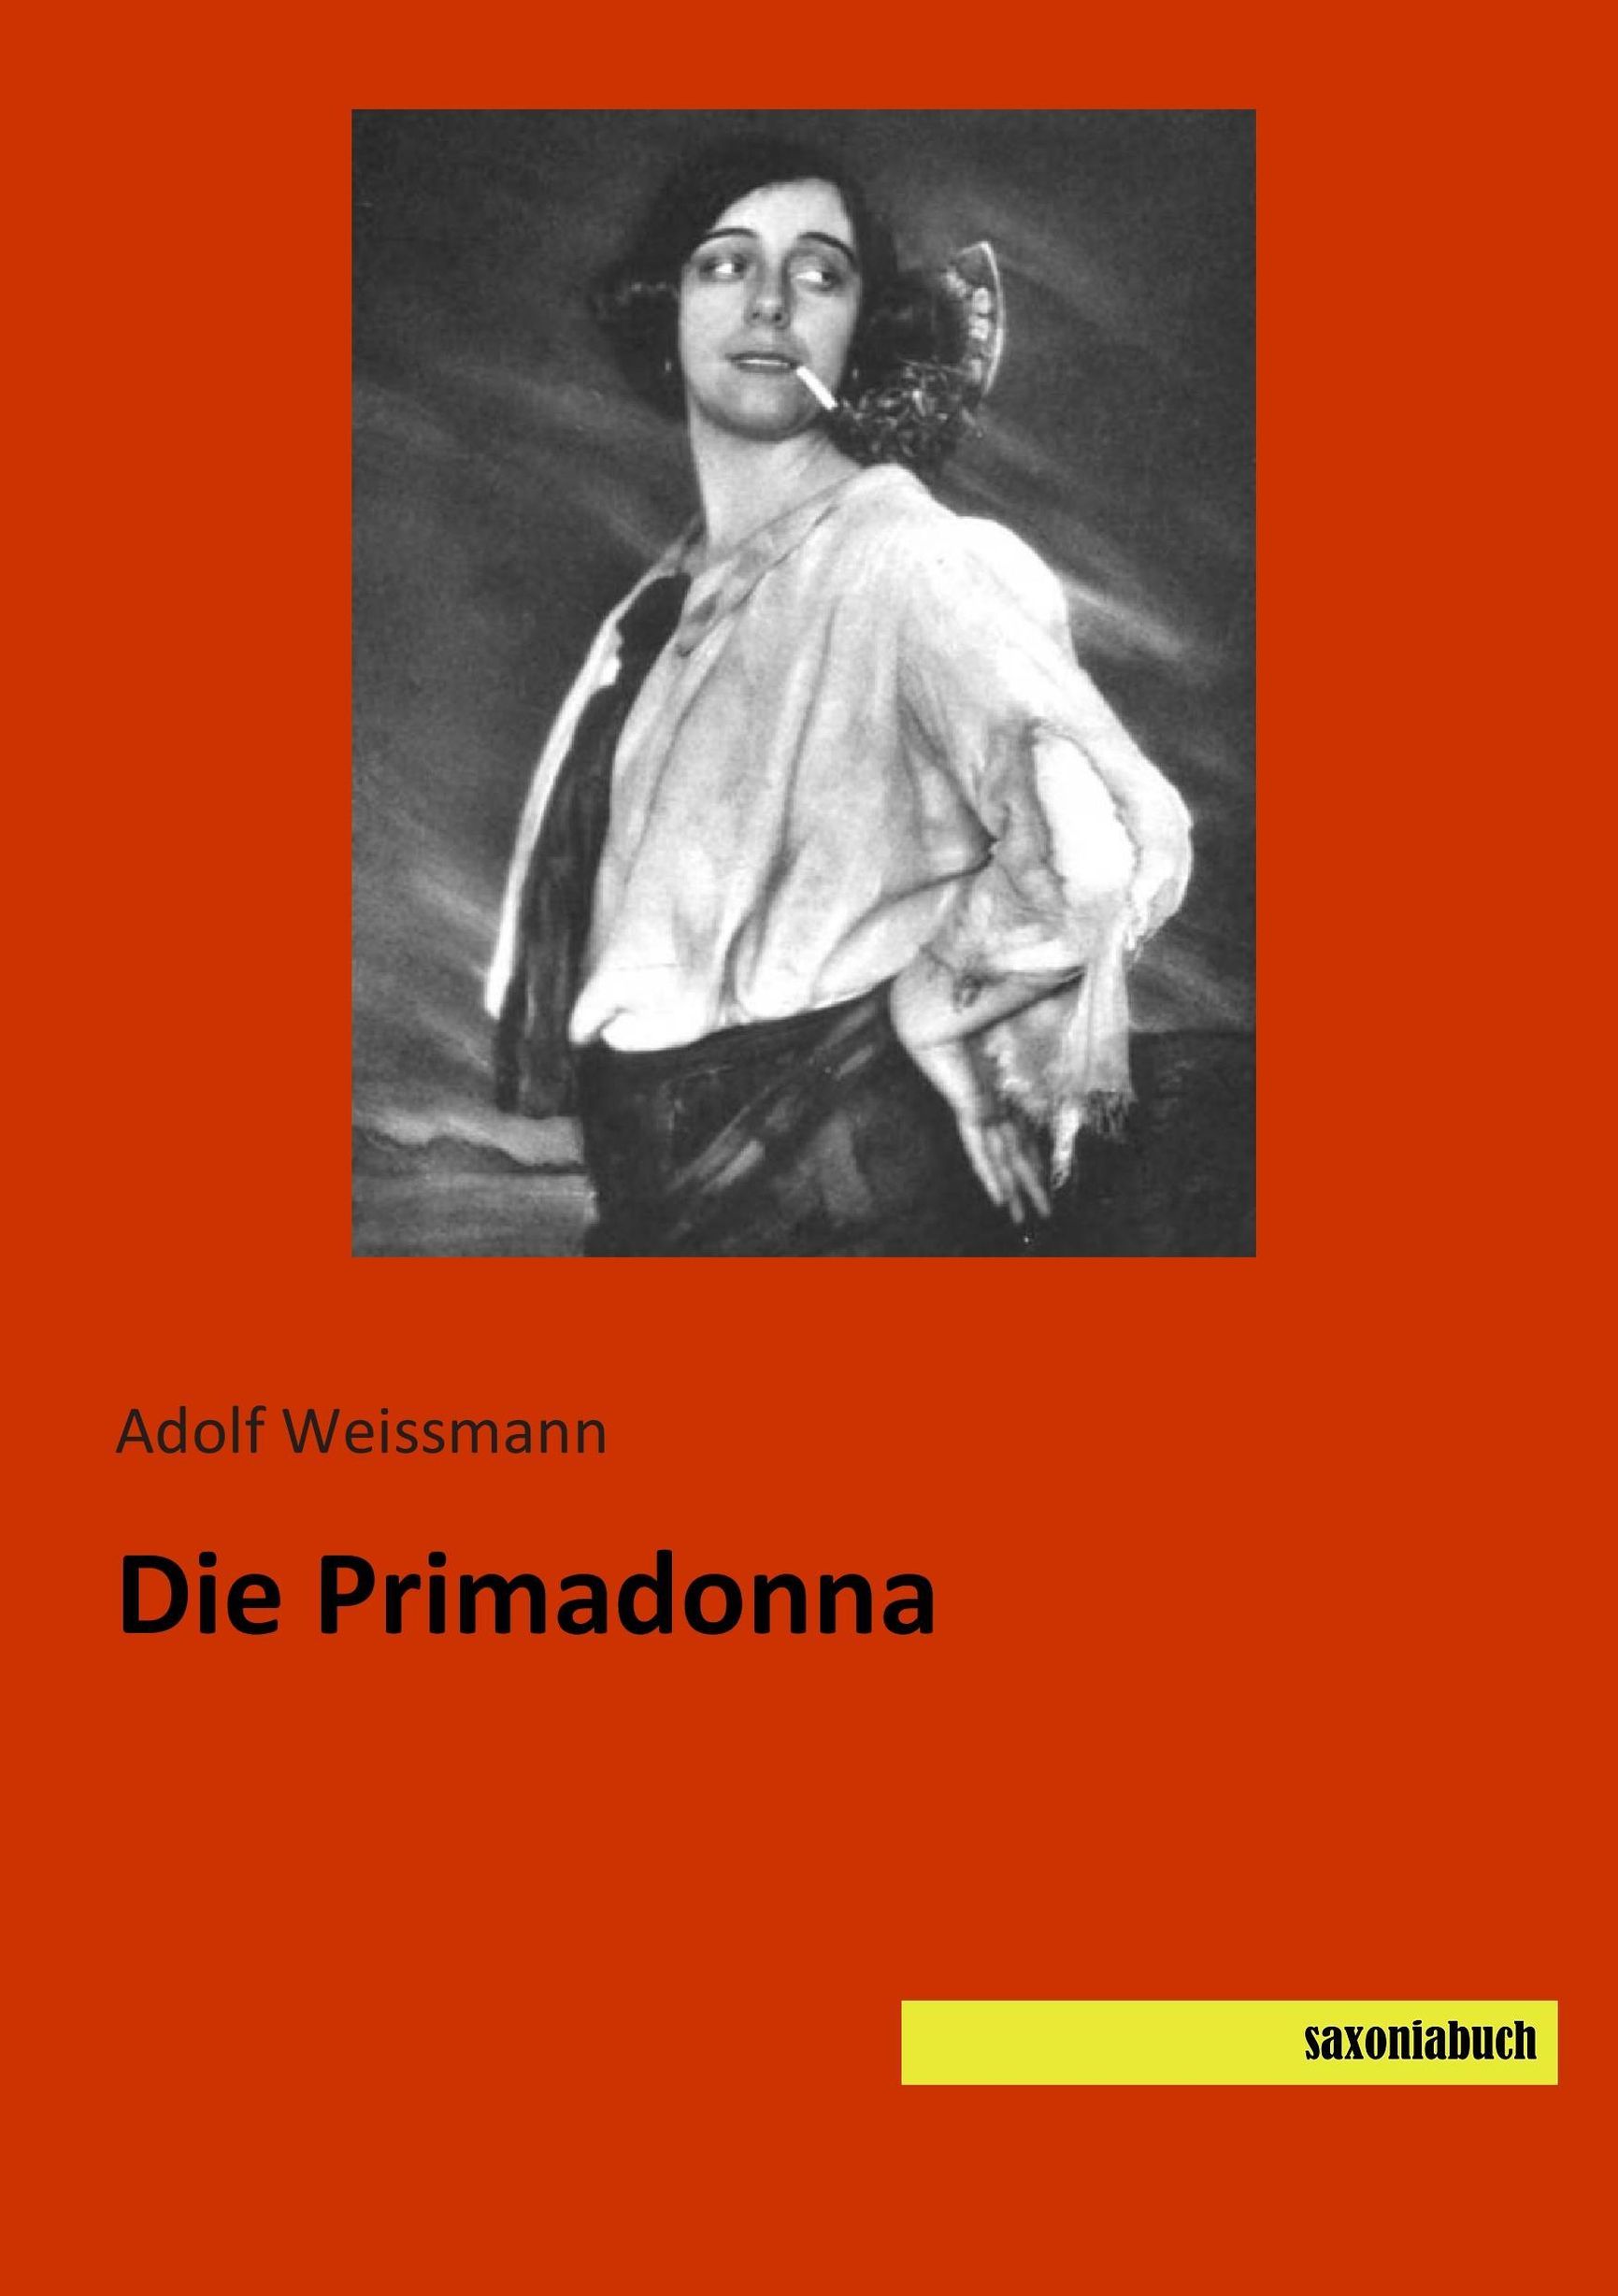 Die Primadonna Buch von Adolf Weissmann versandkostenfrei bei Weltbild.de